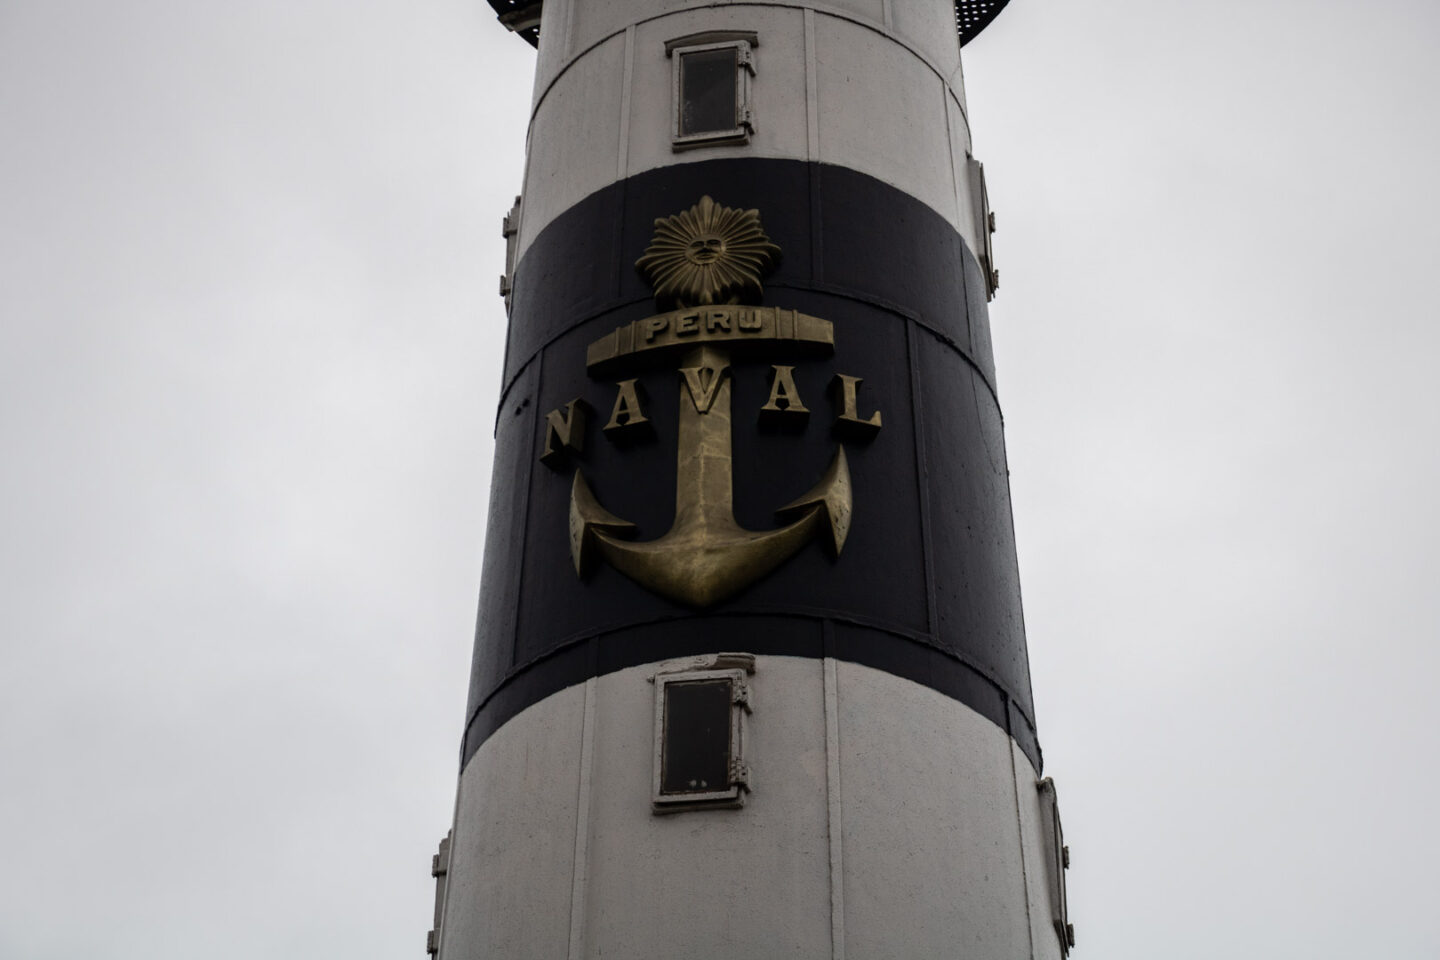 La Marina Lighthouse in Lima